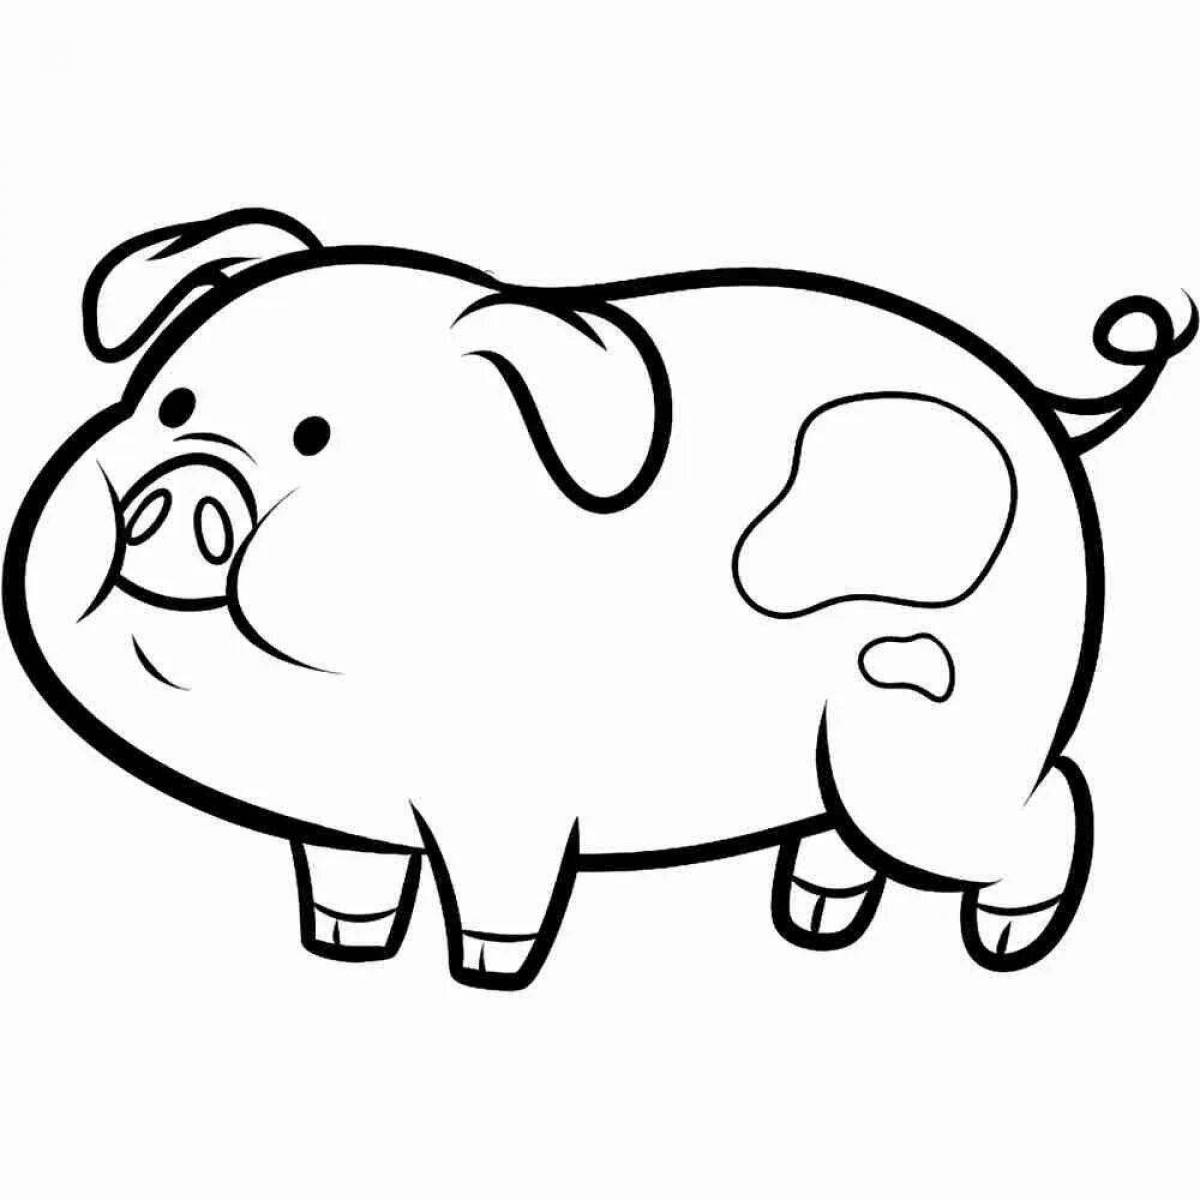 Раскраска веселая мини-свинка